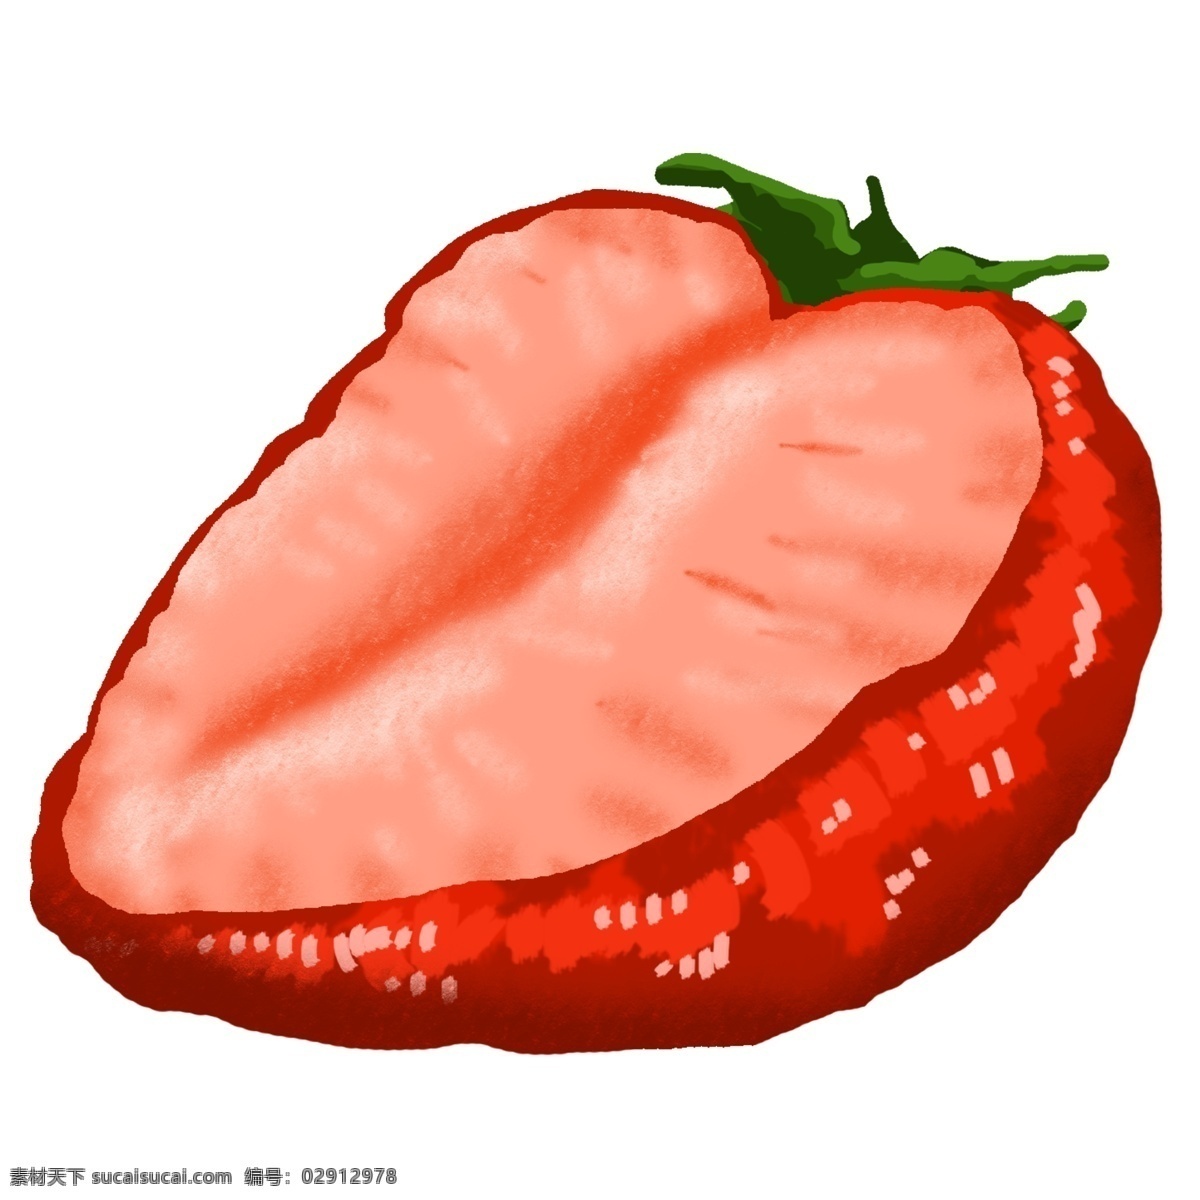 手绘 美味 草莓 插画 美味的草莓 手绘草莓 切开的草莓 美食插画 水果插画 红色草莓插画 水果草莓